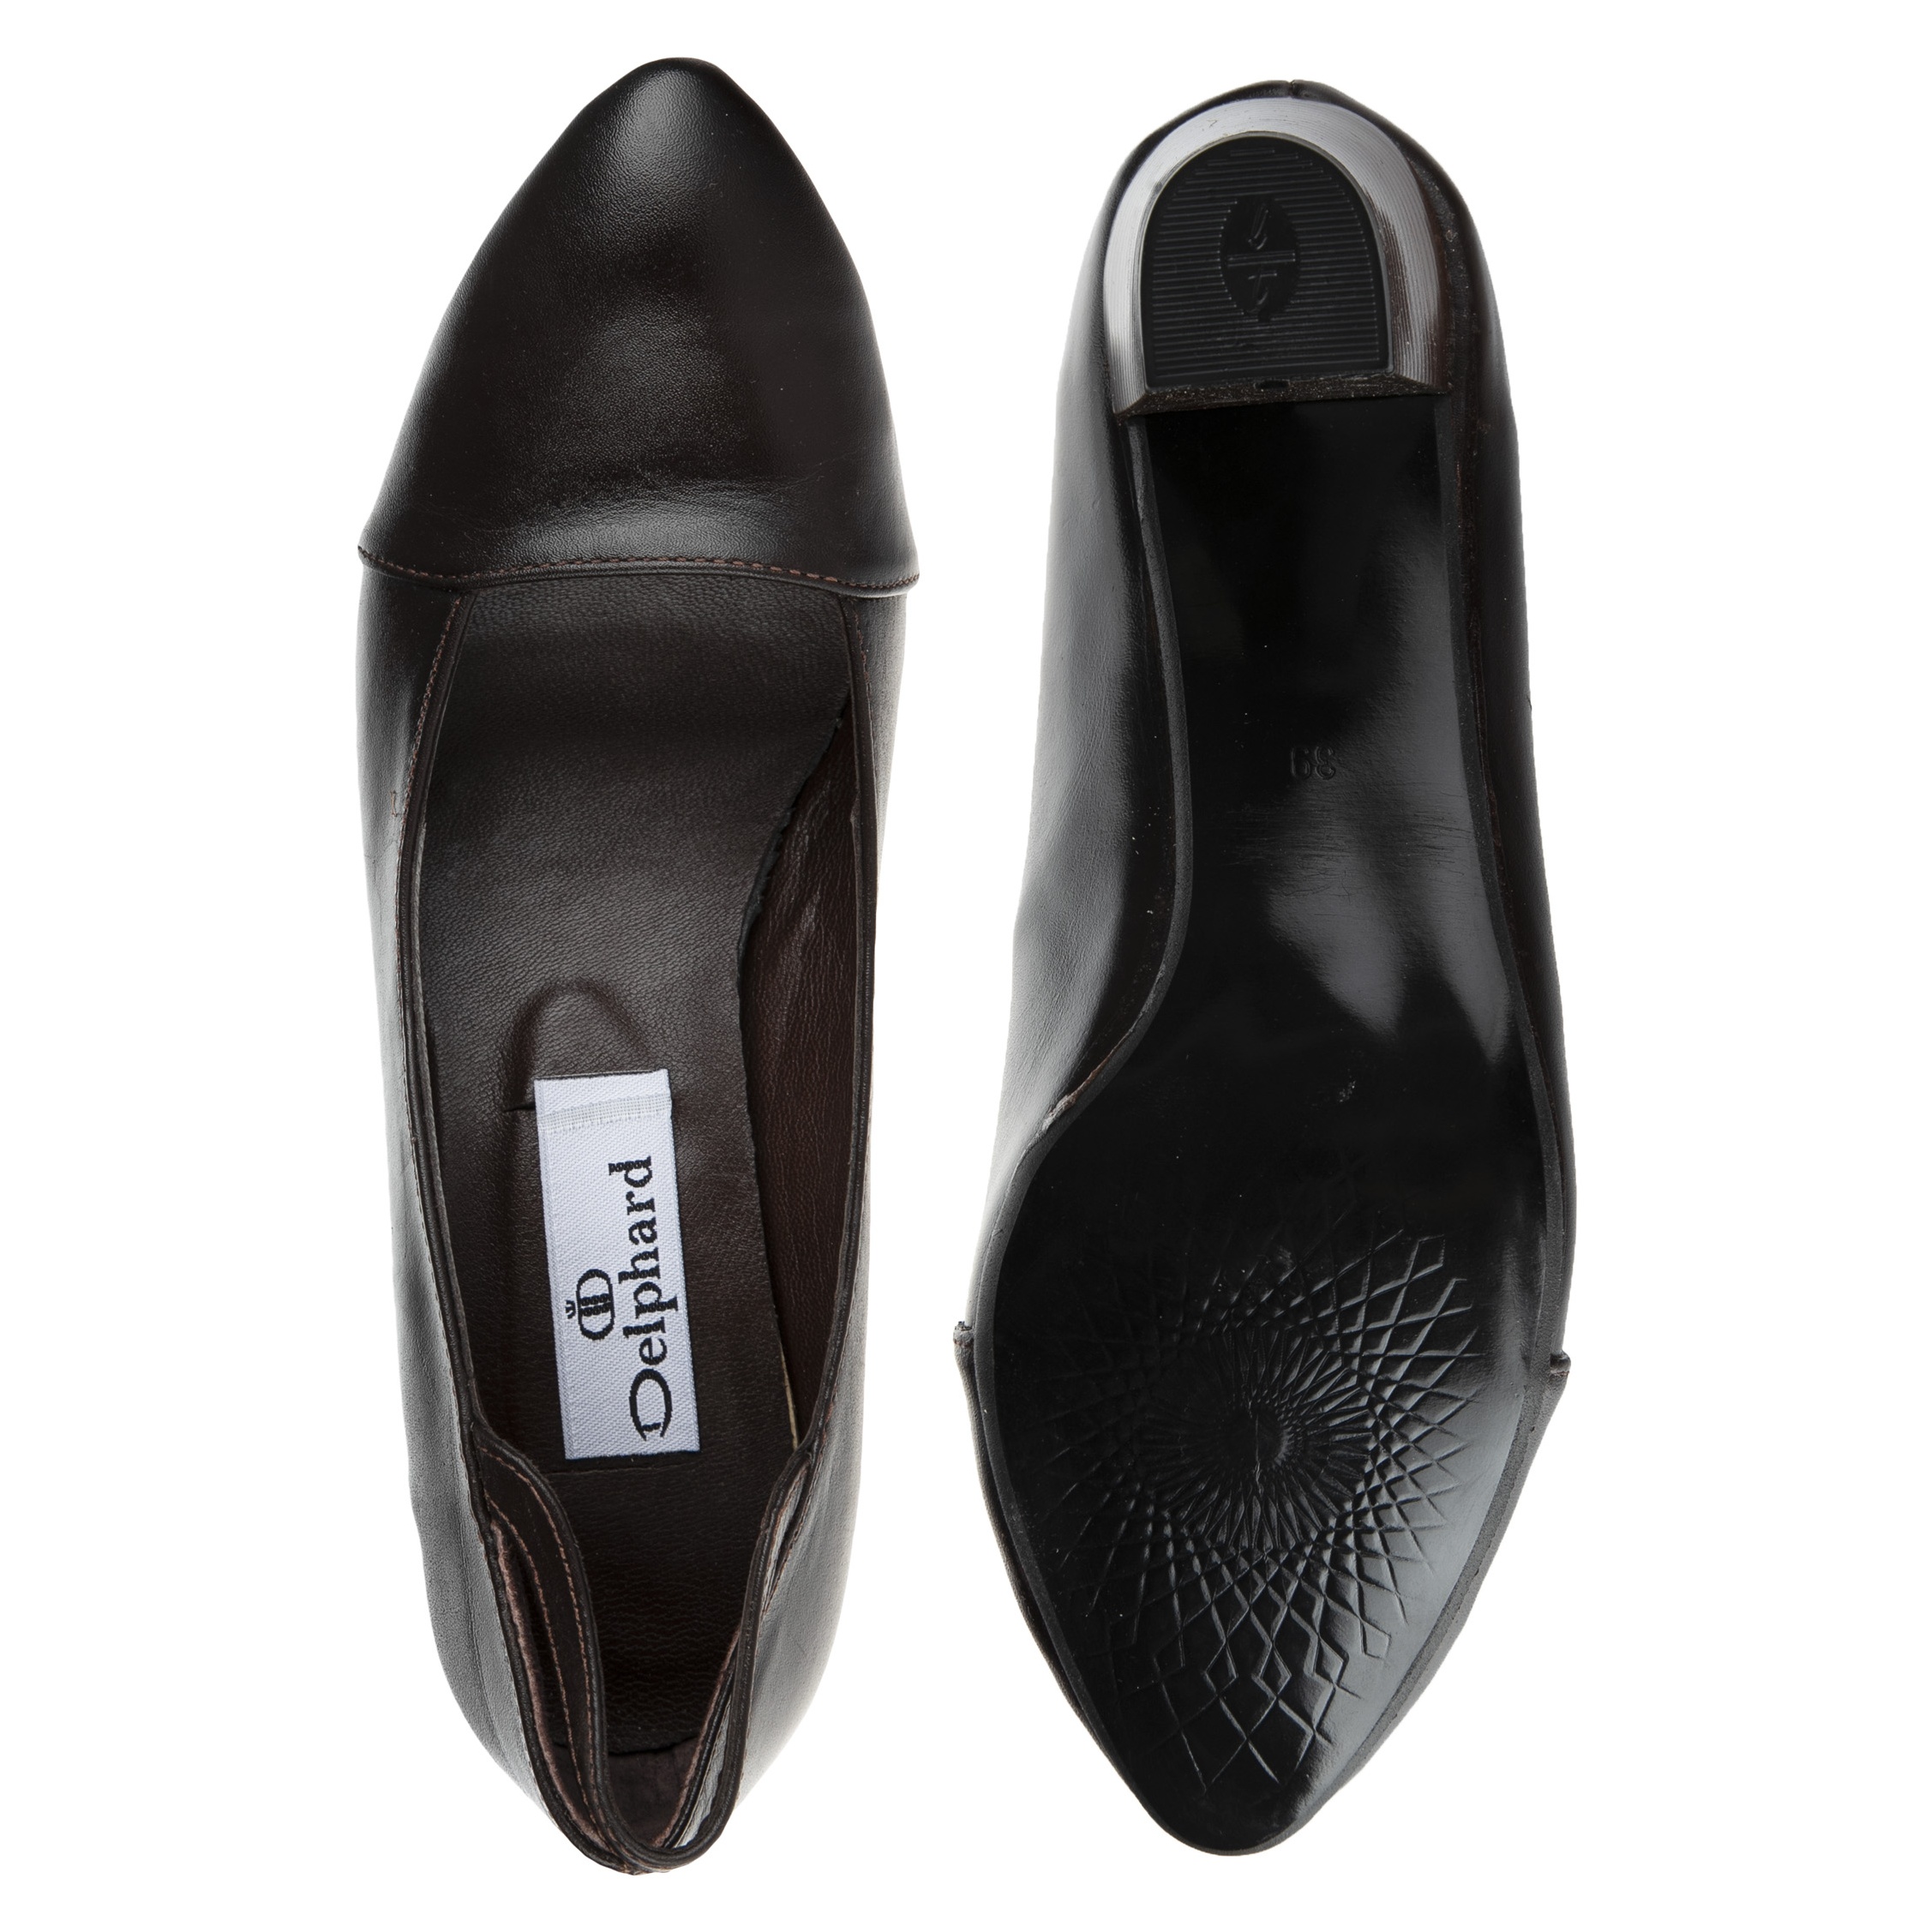 کفش زنانه دلفارد مدل DL5122C500-104